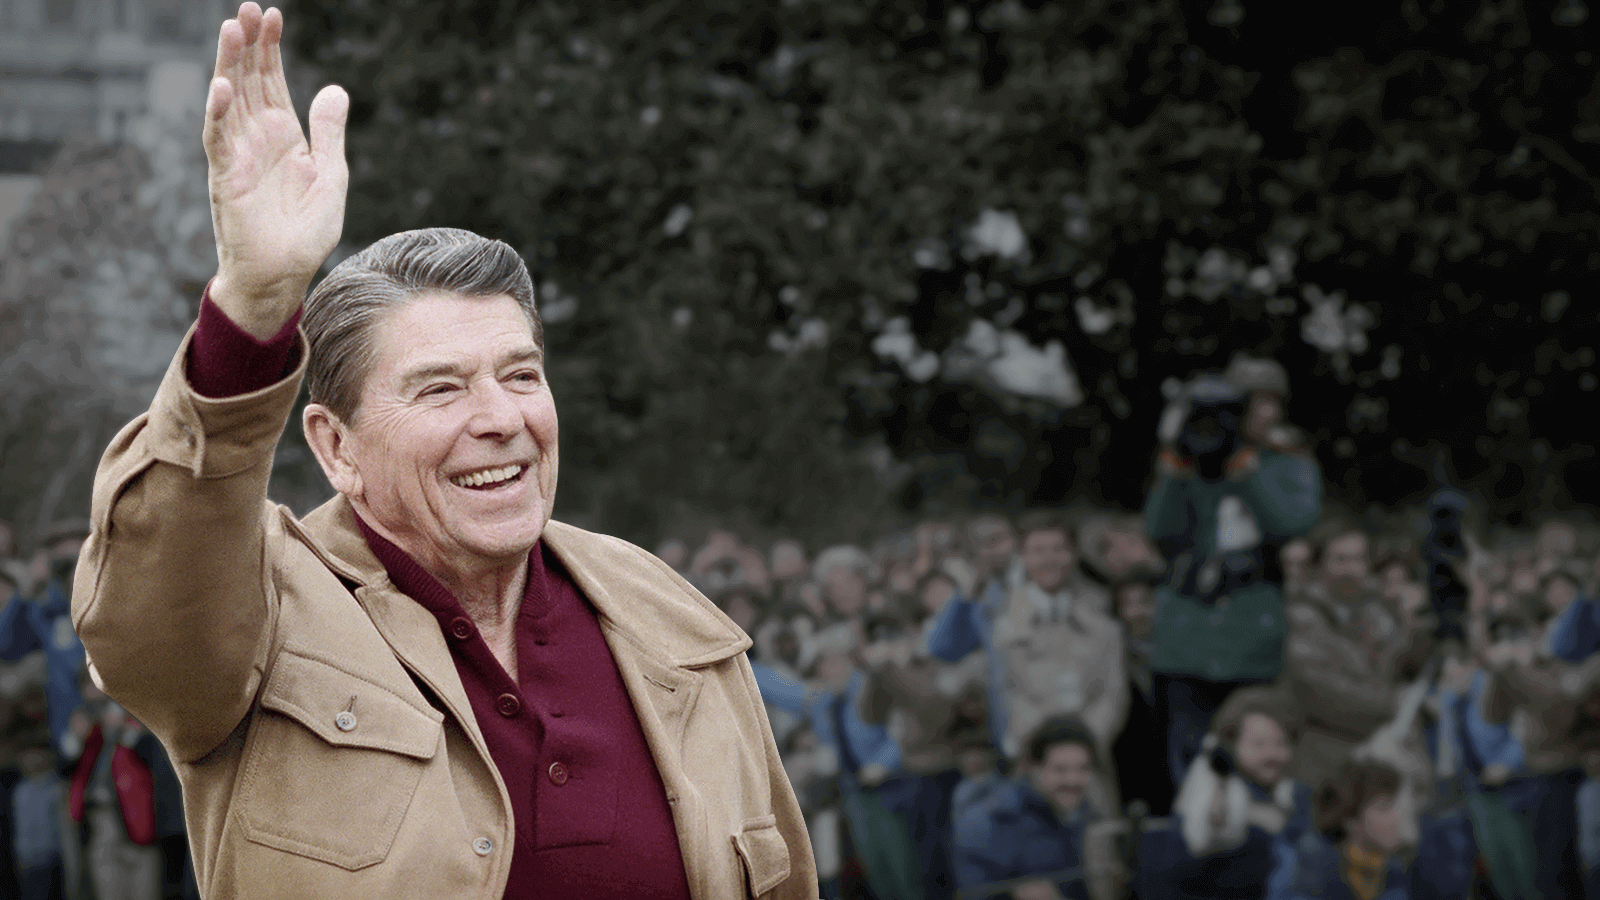 Ronald Reagan waving at crowd